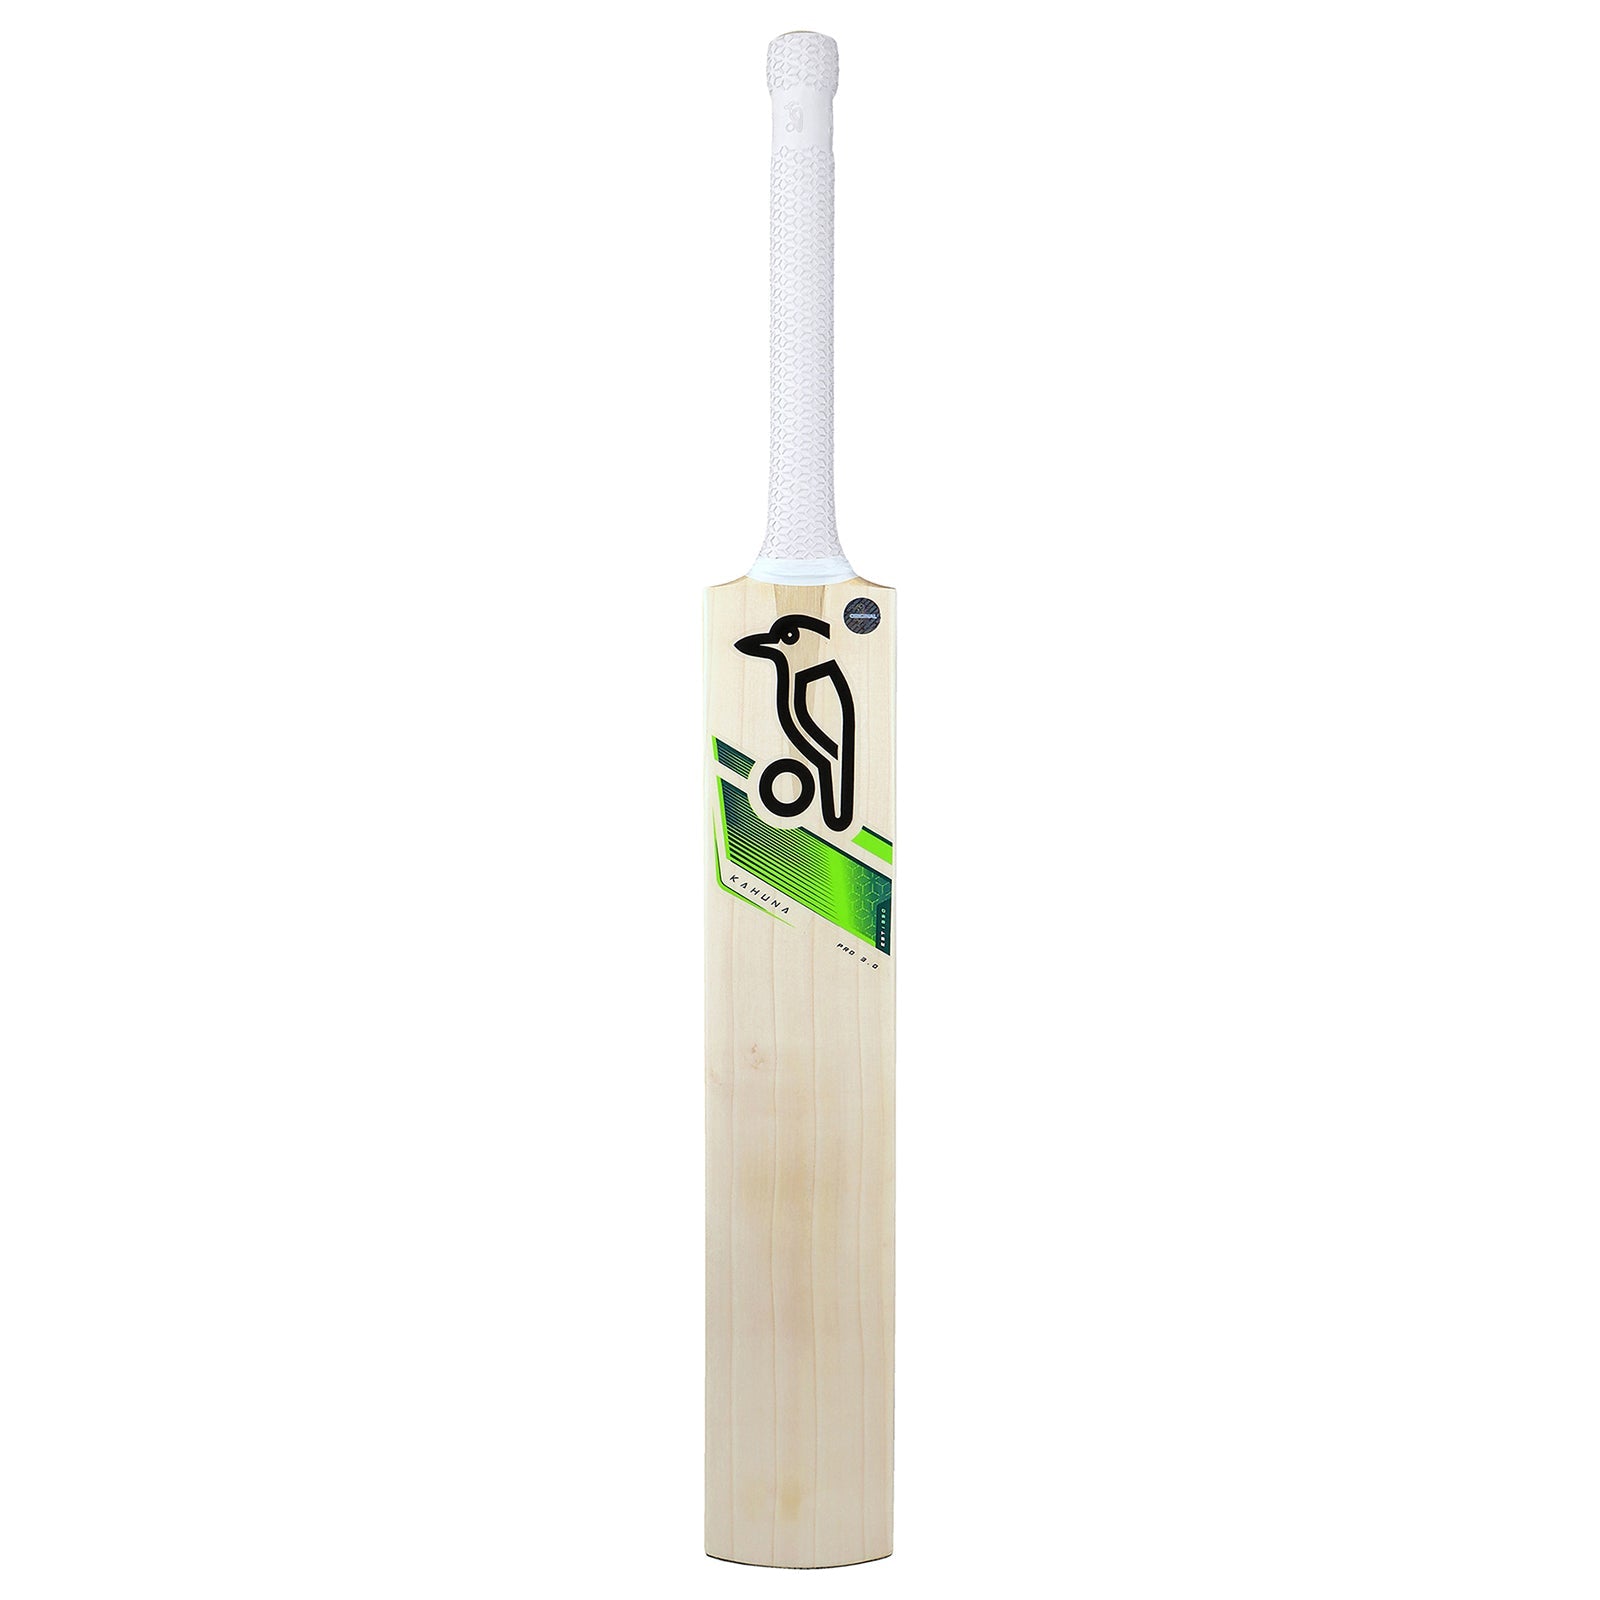 Kookaburra Kahuna Pro 3.0 Cricket Bat - Harrow